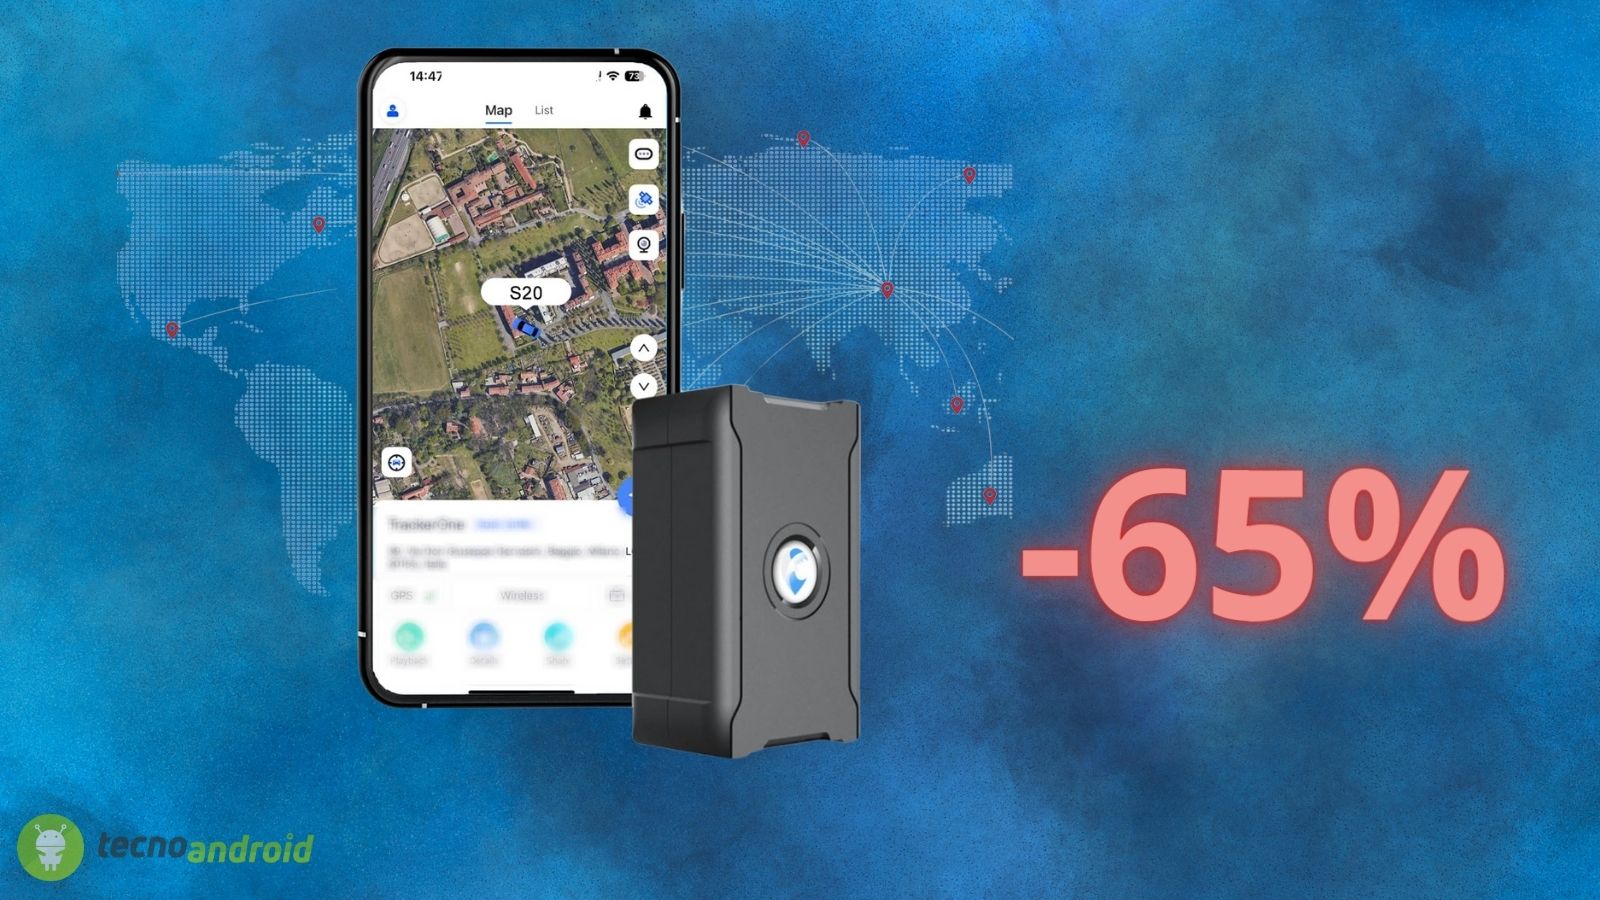 Antifurto GPS per auto: prezzo di 6€ con doppio COUPON su AMAZON